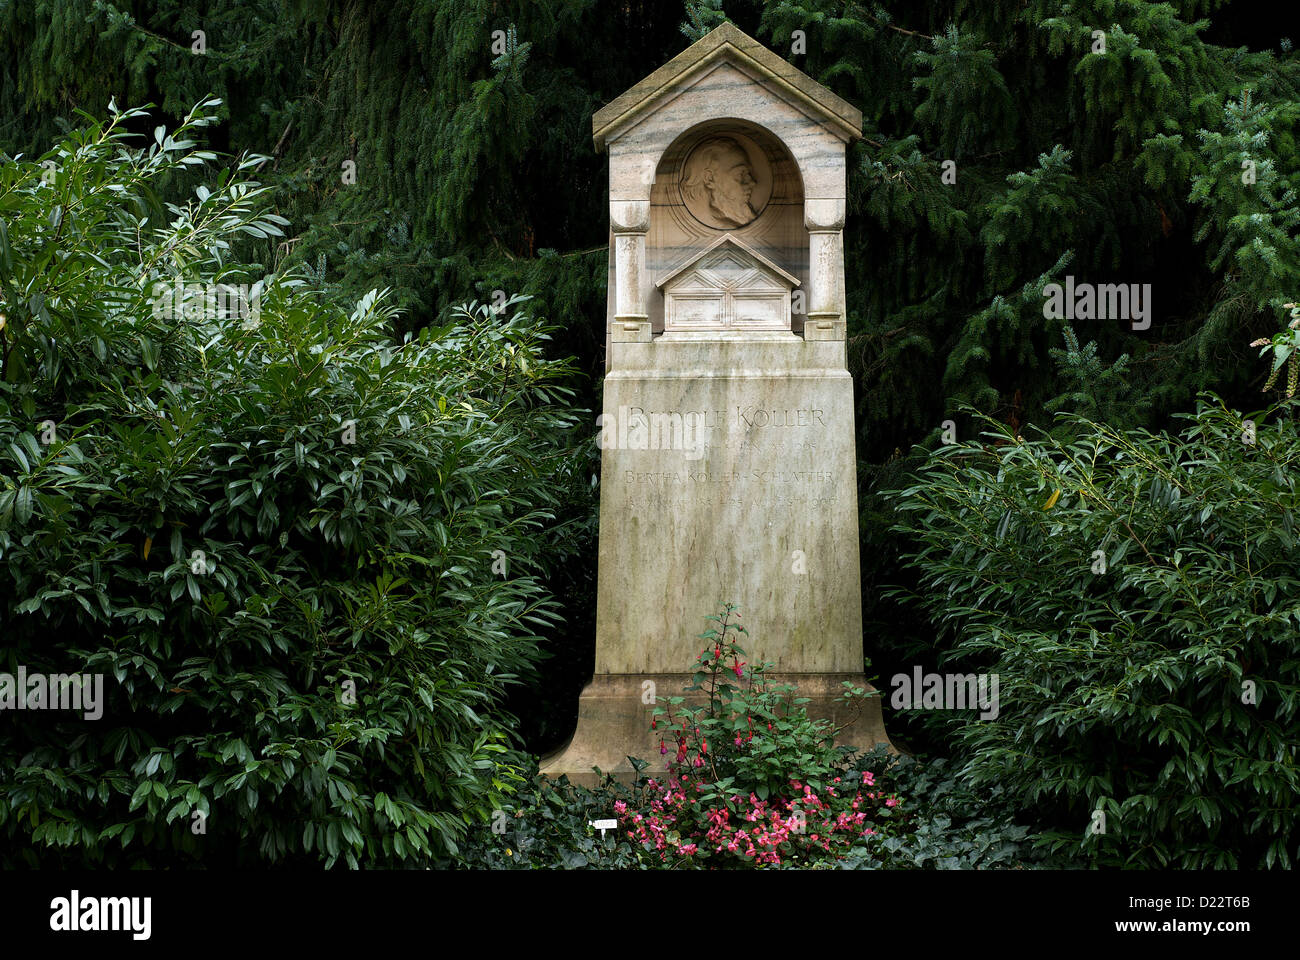 Zurigo, Svizzera, la tomba del pittore Rudolf Koller Foto Stock